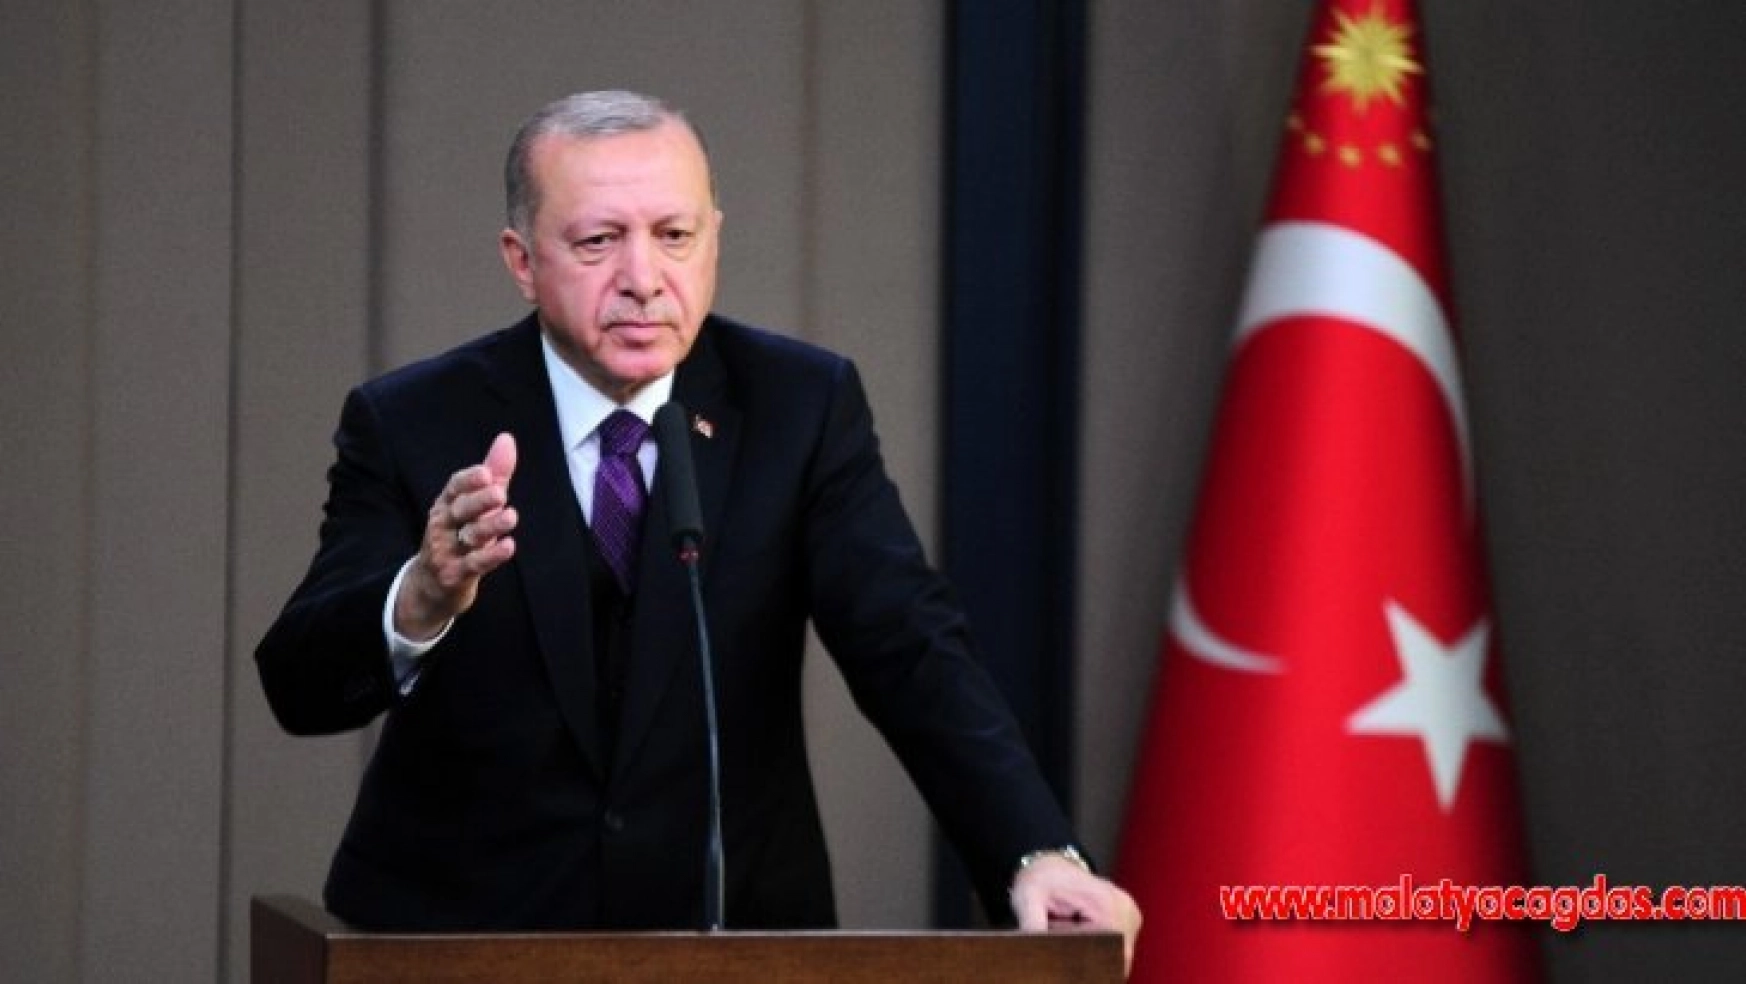 Cumhurbaşkanı Erdoğan: 5 Mart'ta en kötü ihtimalle Putin ile bir araya gelmemiz söz konusu